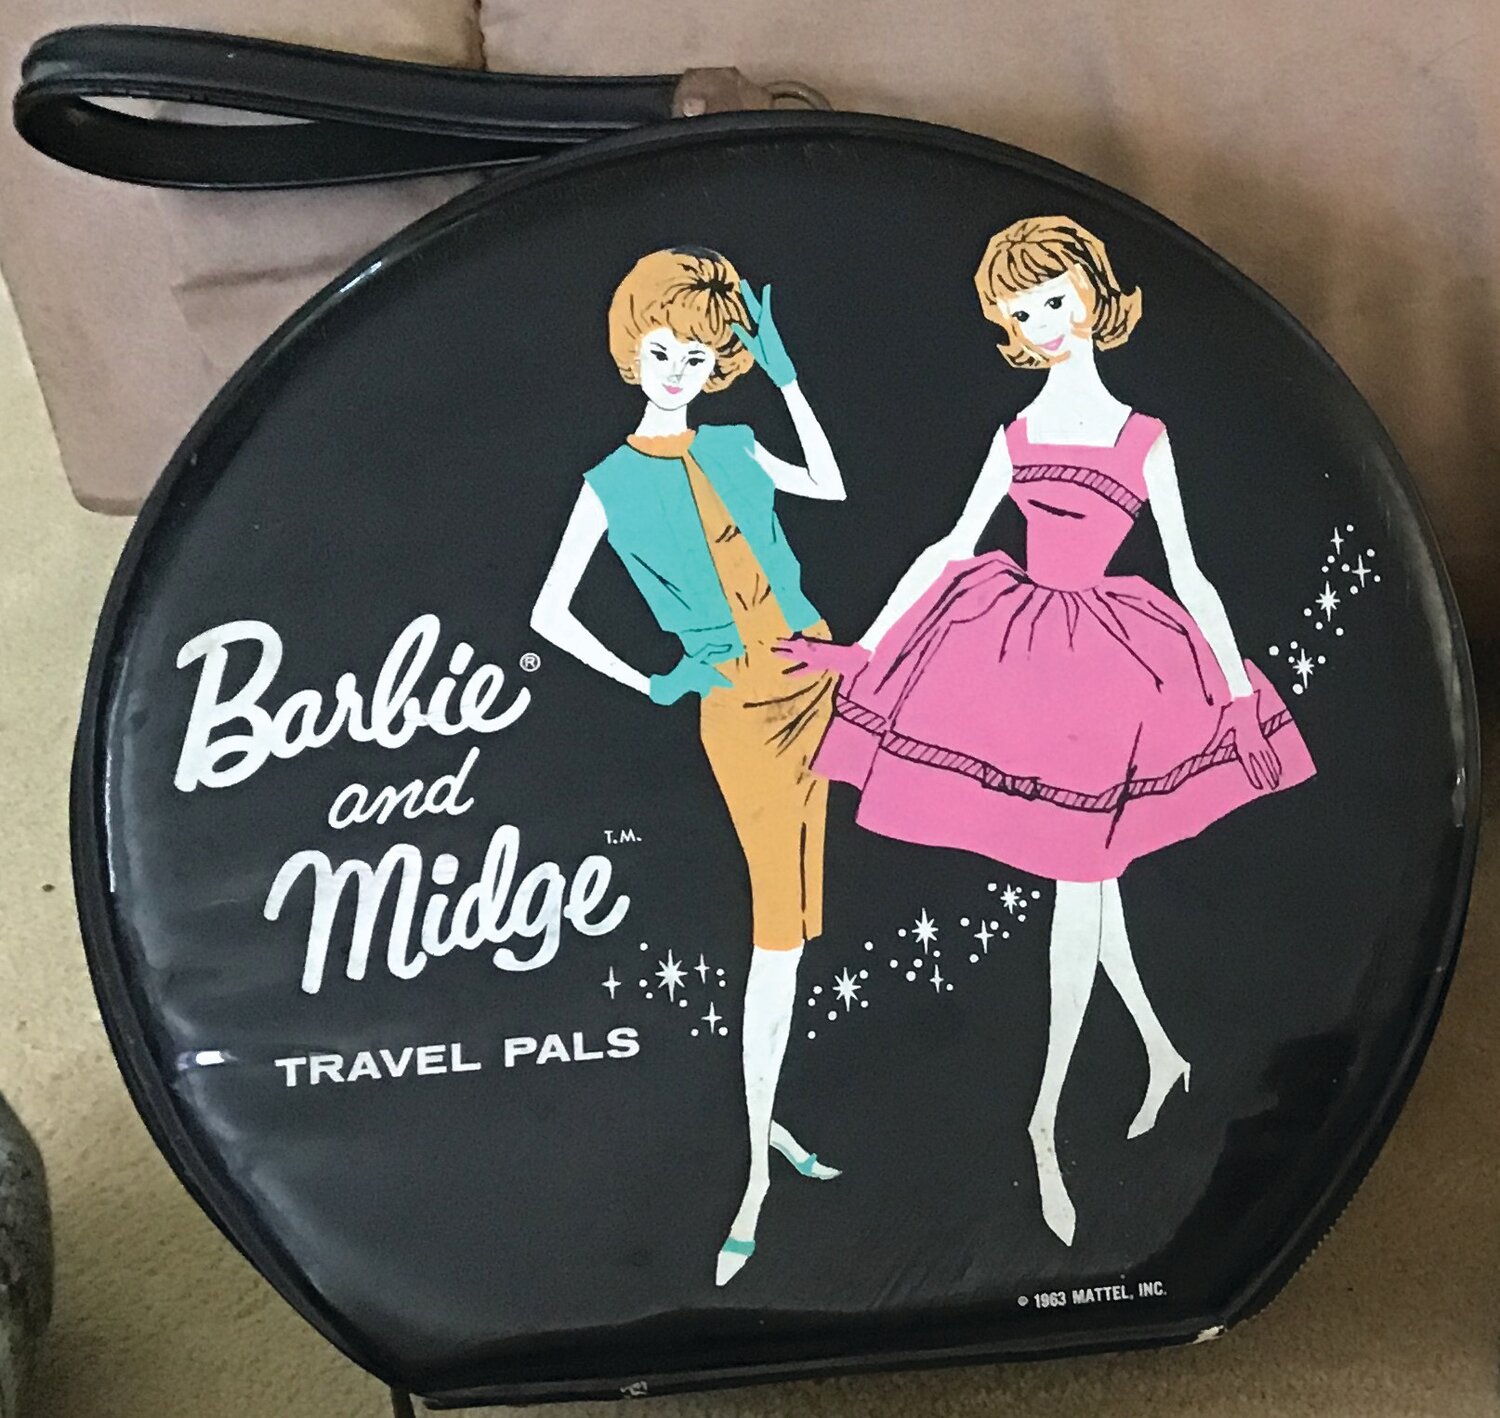 The Barbie and Midge travel case.